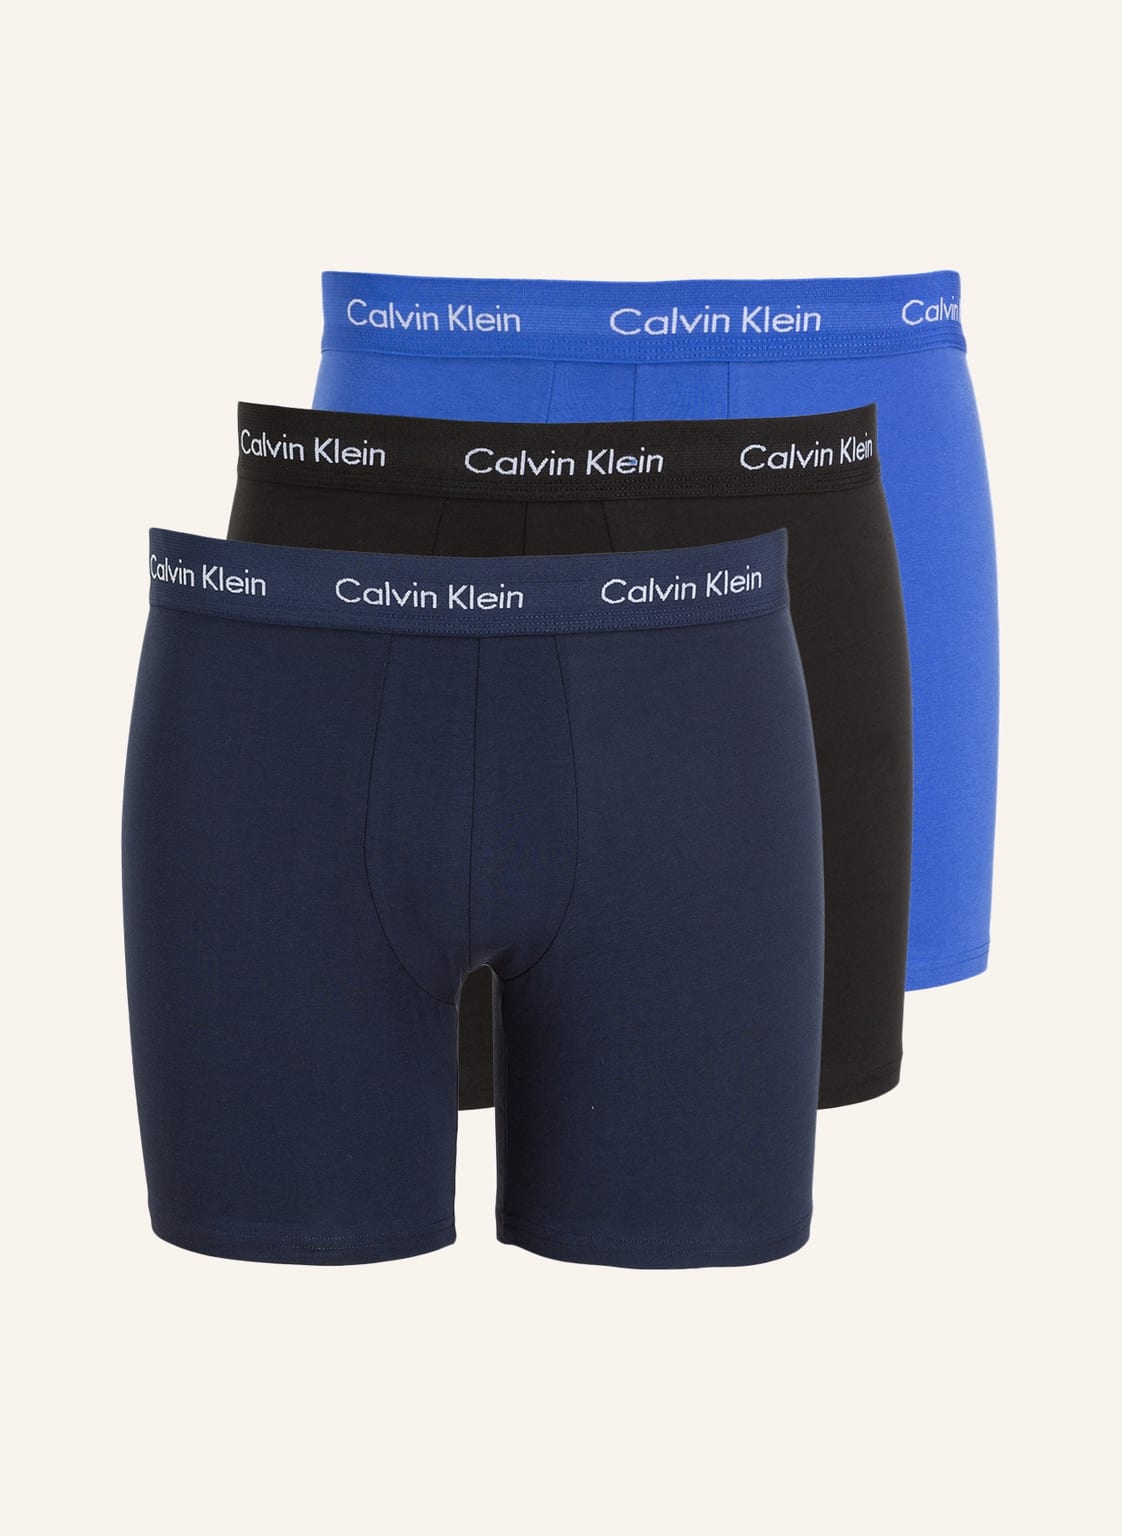 Calvin Klein Bokserki Cotton Stretch, 3 Szt. blau